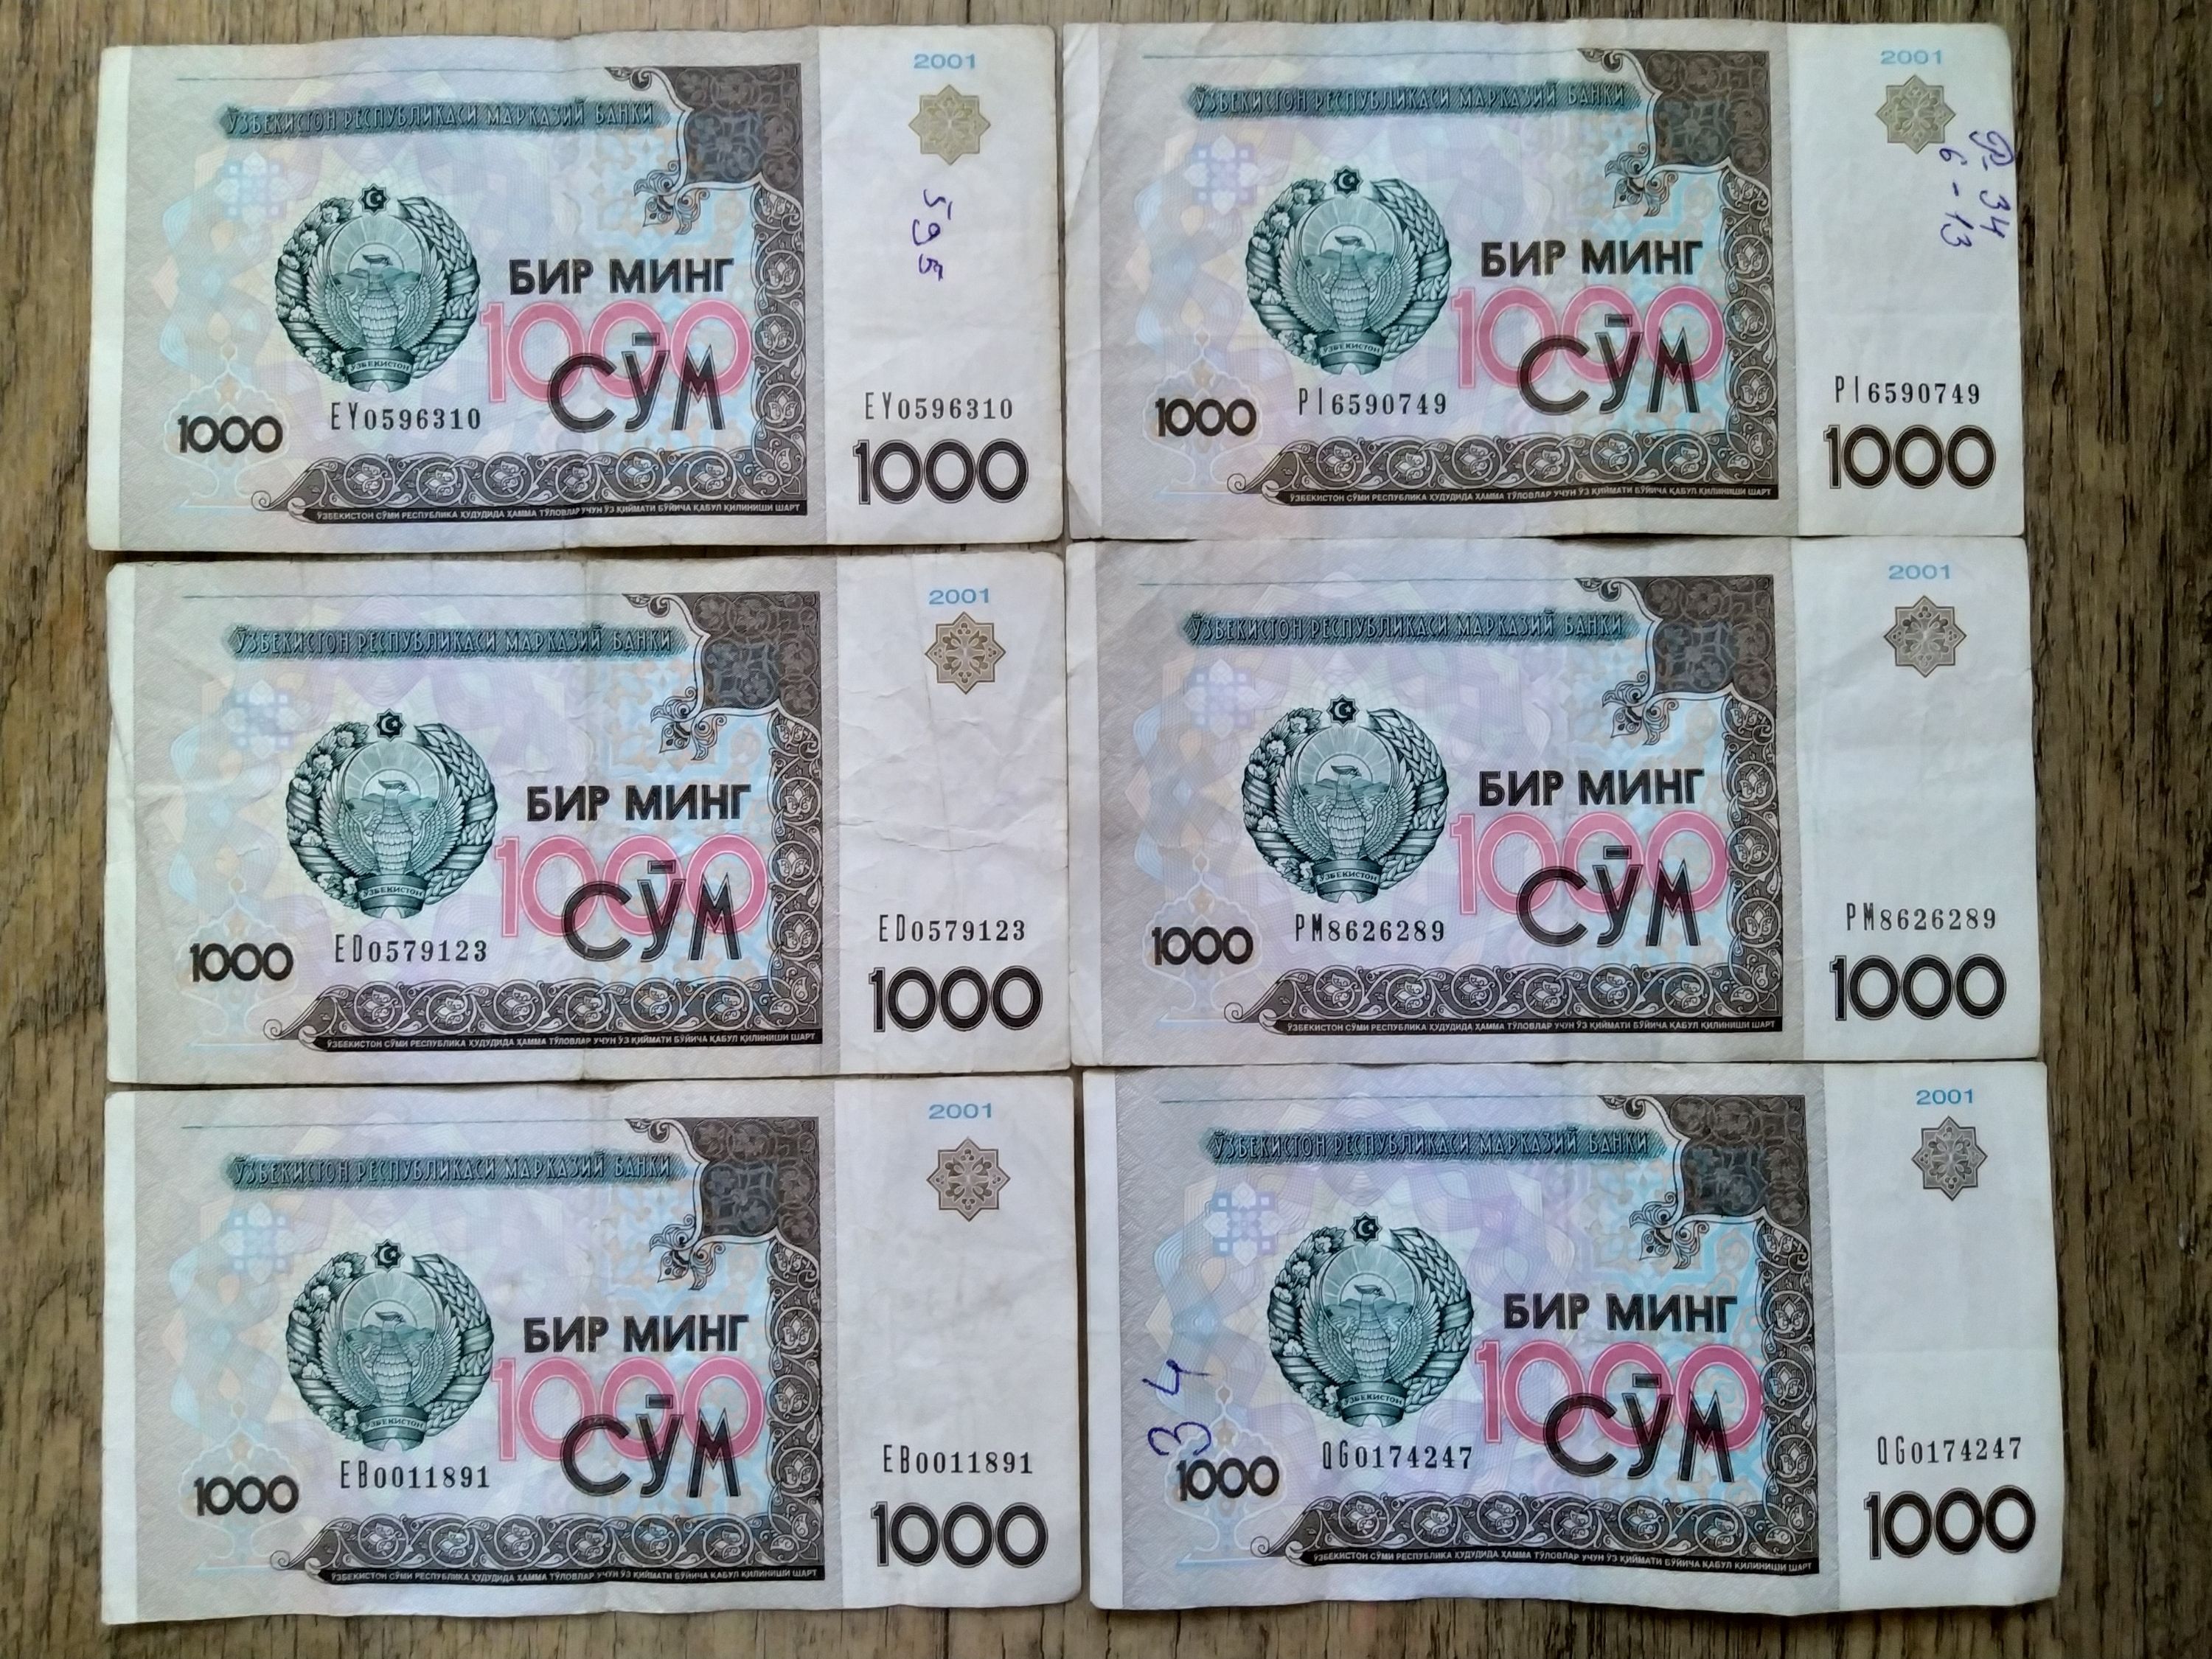 Рубль на сум узбекистан сегодня 1000. 1000 Сум. Купюры Узбекистана. Банкноты Узбекистан 1998. Узбекистан купюру покажи.